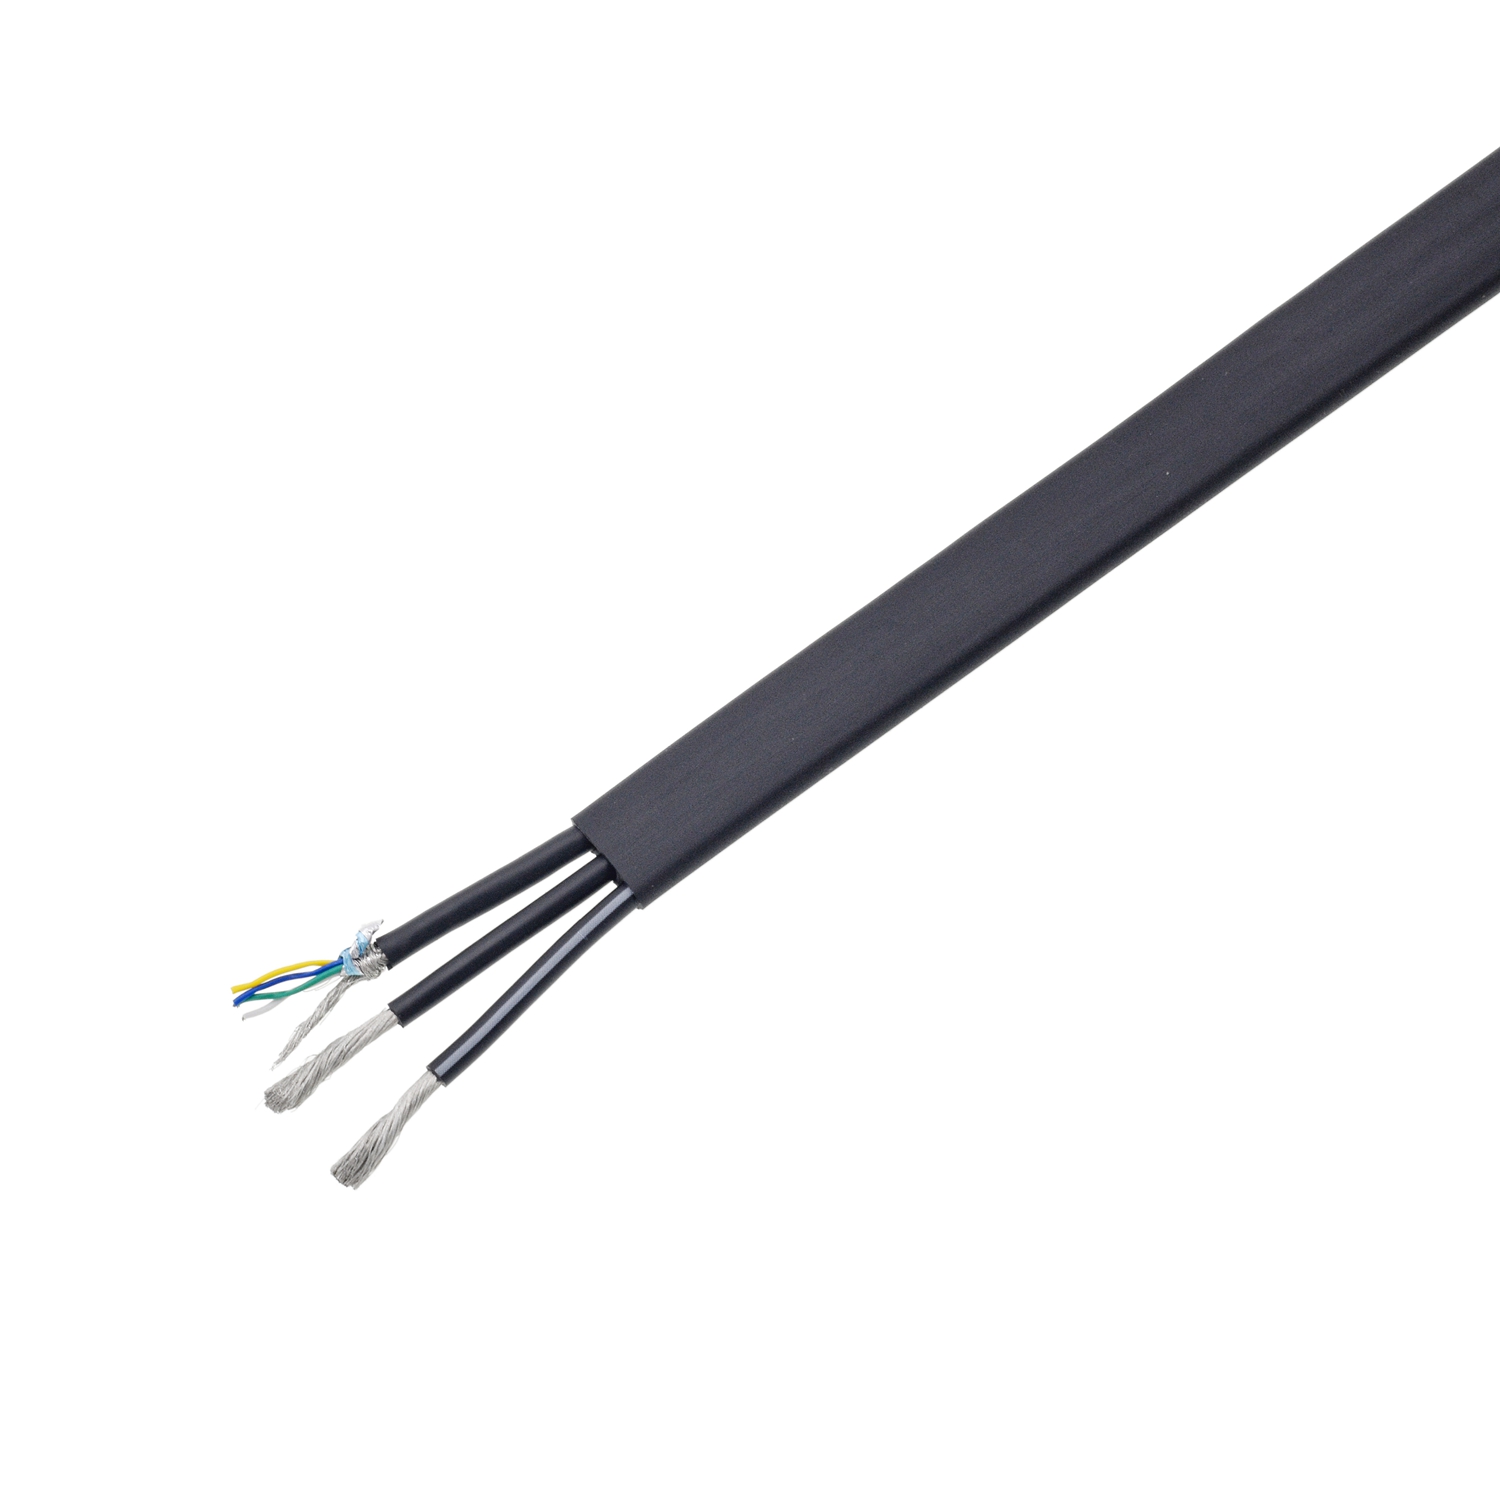 Robot Cable Super Flexible PVC Copper Wire Oil Resistance